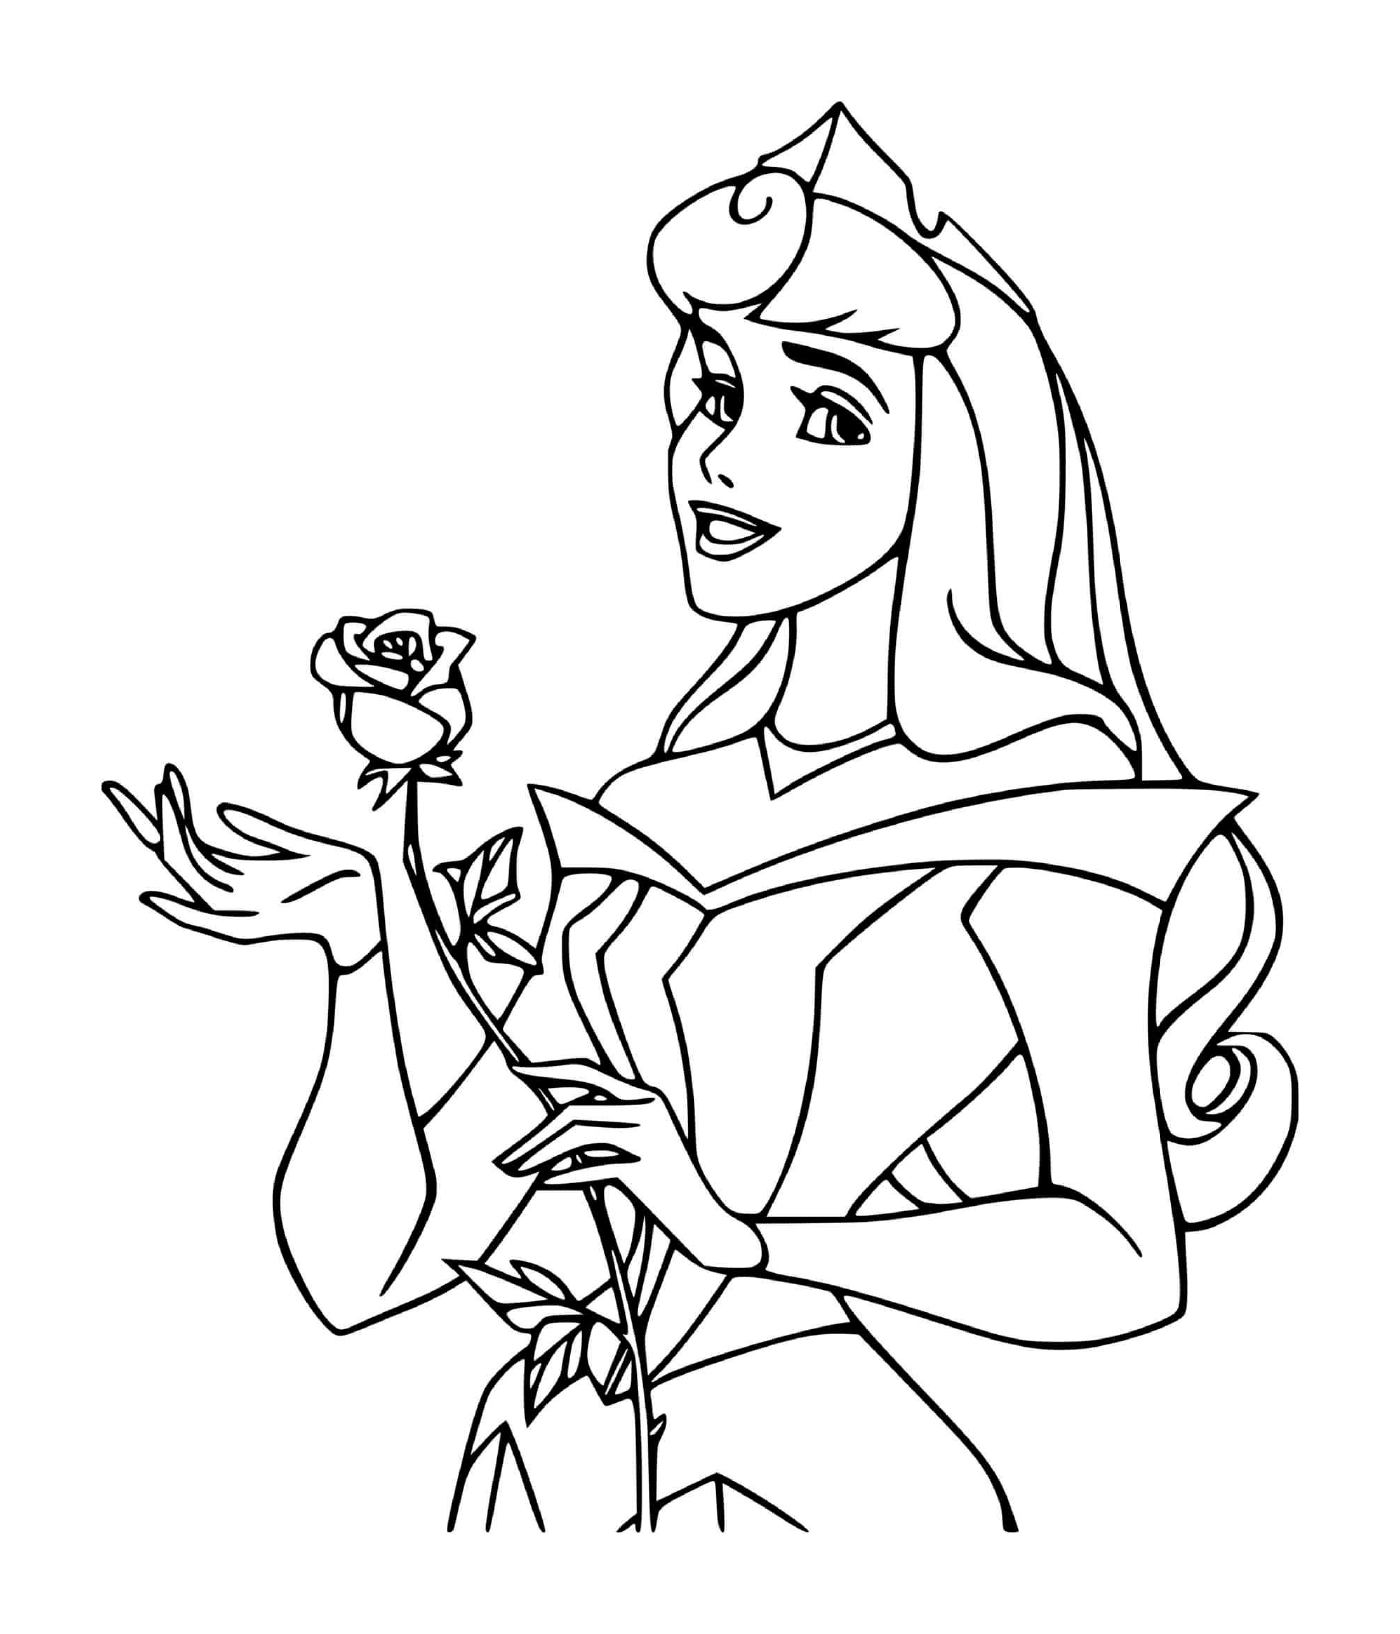  Принцесса Ла Белль-ау-Буа бездействует (Дисней) с розой 